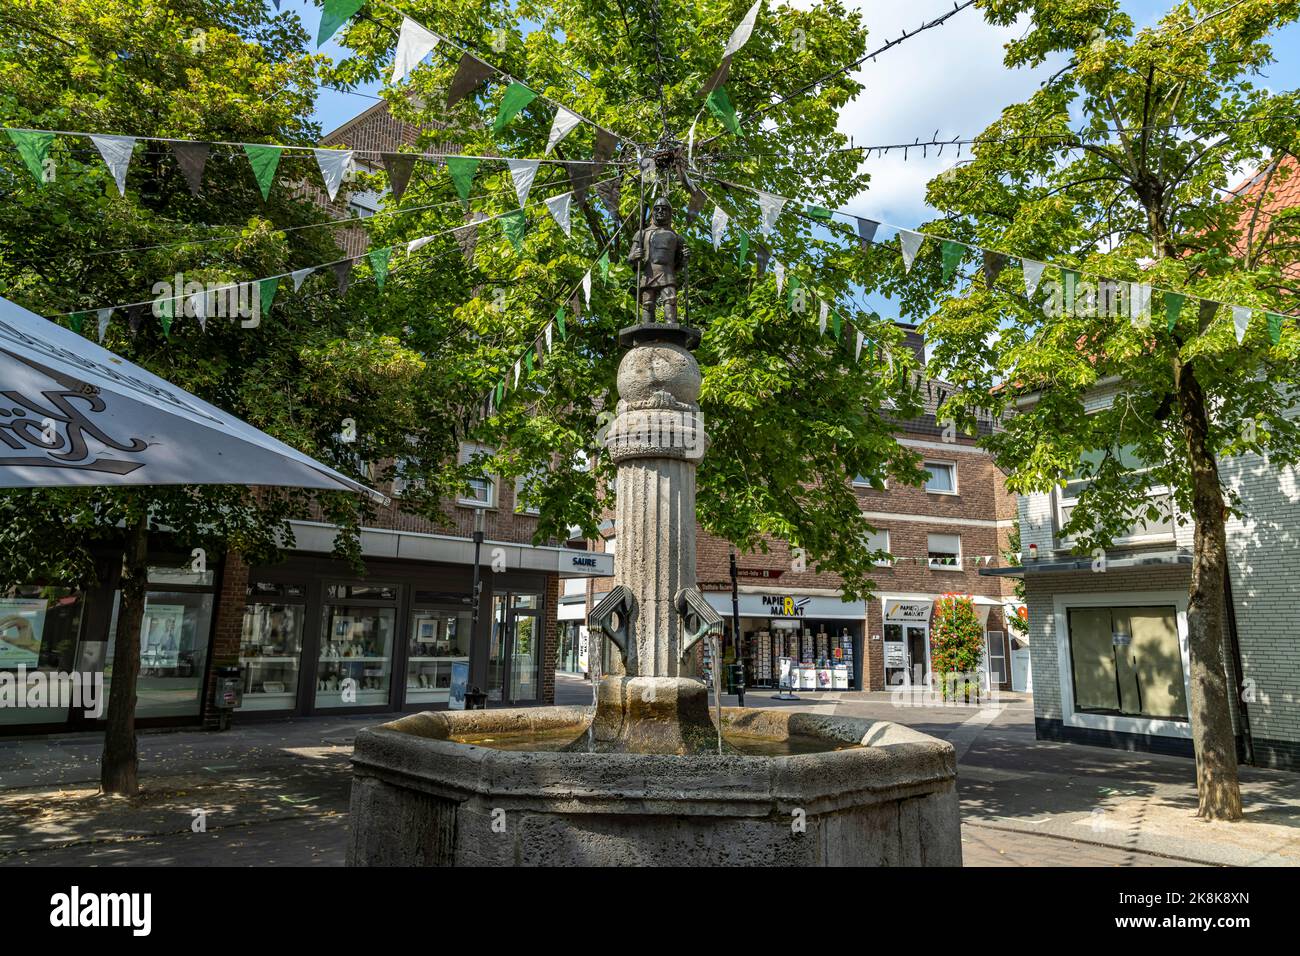 Brunnen auf dem Kornmarkt, Borken, Münsterland, Nordrhein-Westfalen   |   Fountain on Kornmarkt Square in Borken, North Rhine-Westphalia, Germany Stock Photo